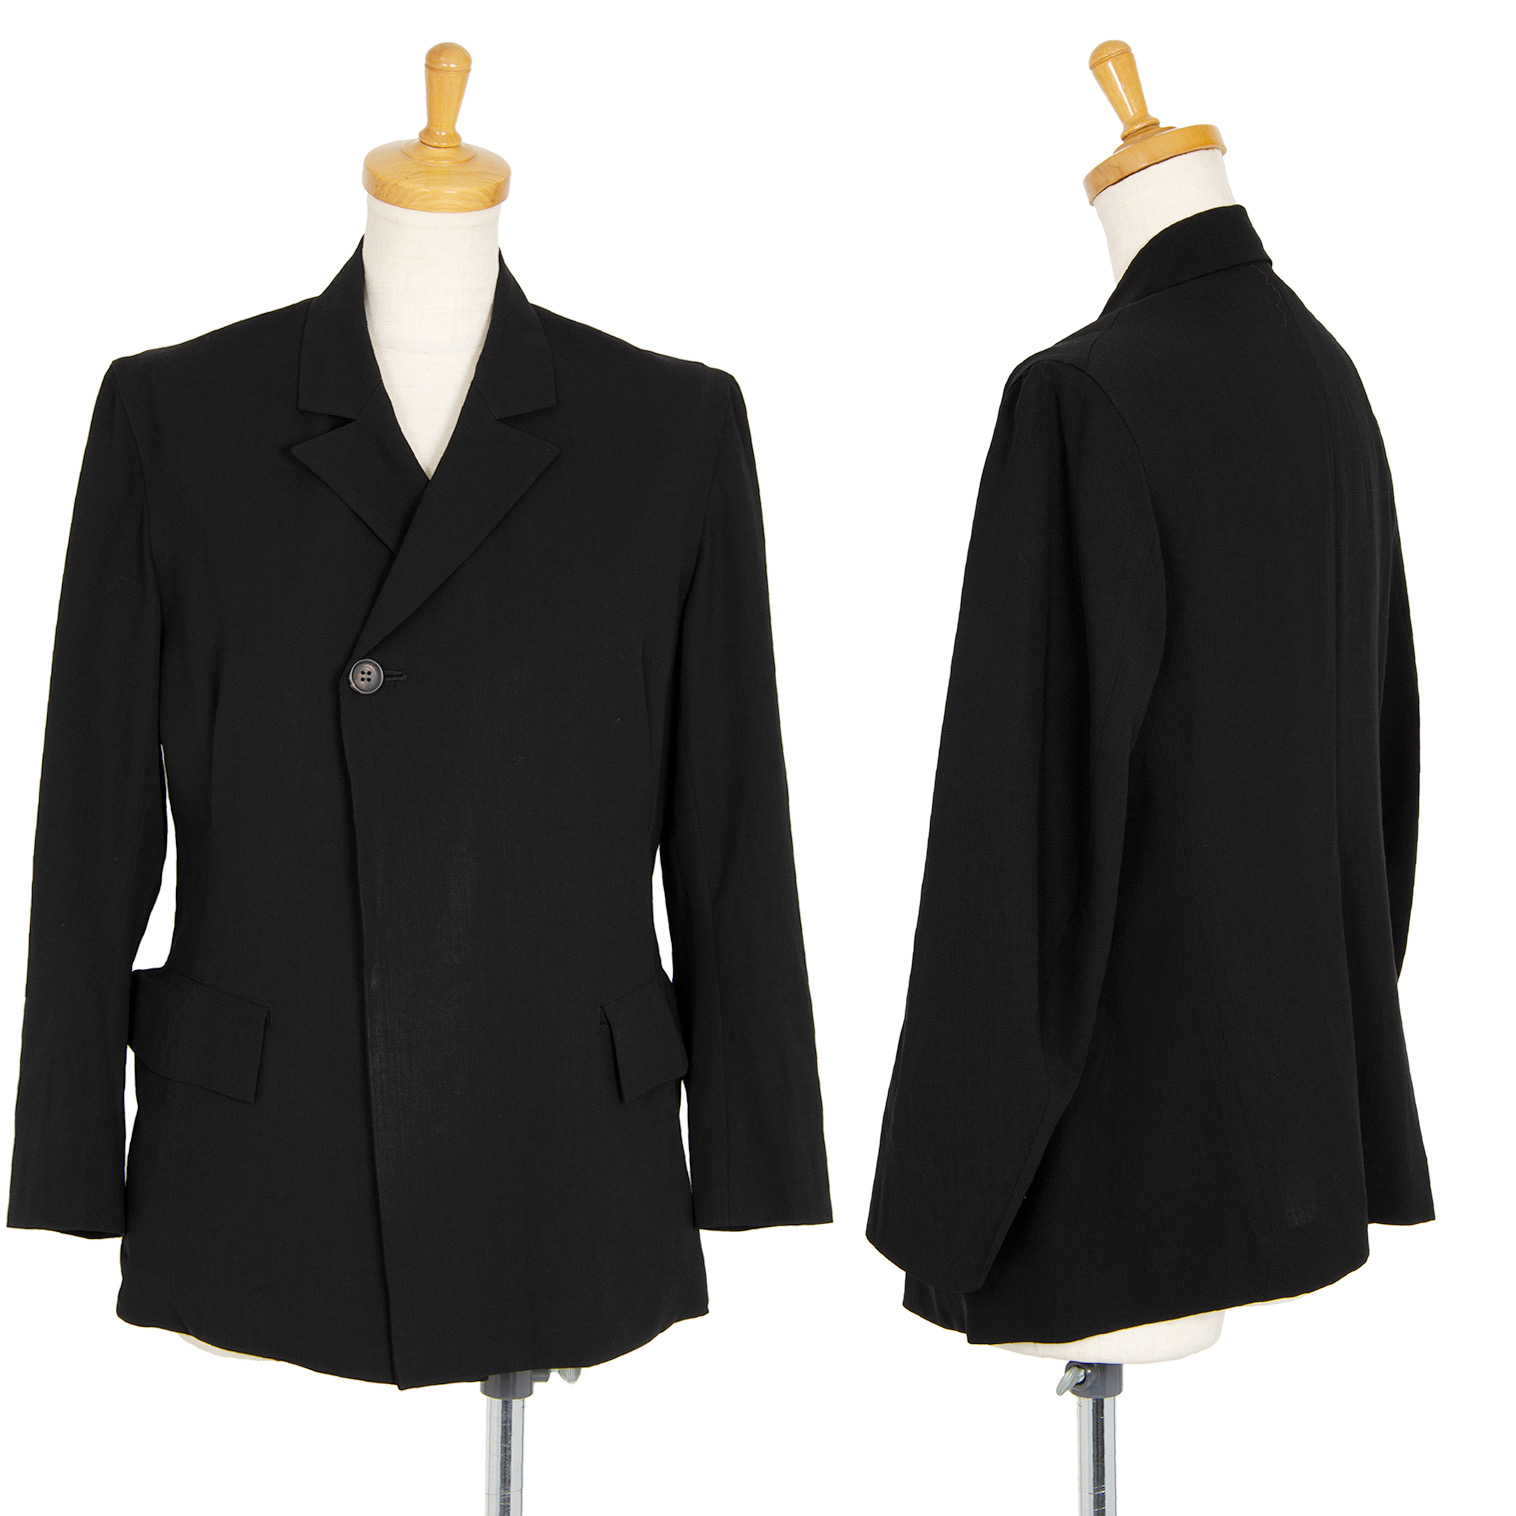 ワイズ 変形ジャケット 2 ブラック ギャバ 安全Shopping - スーツ